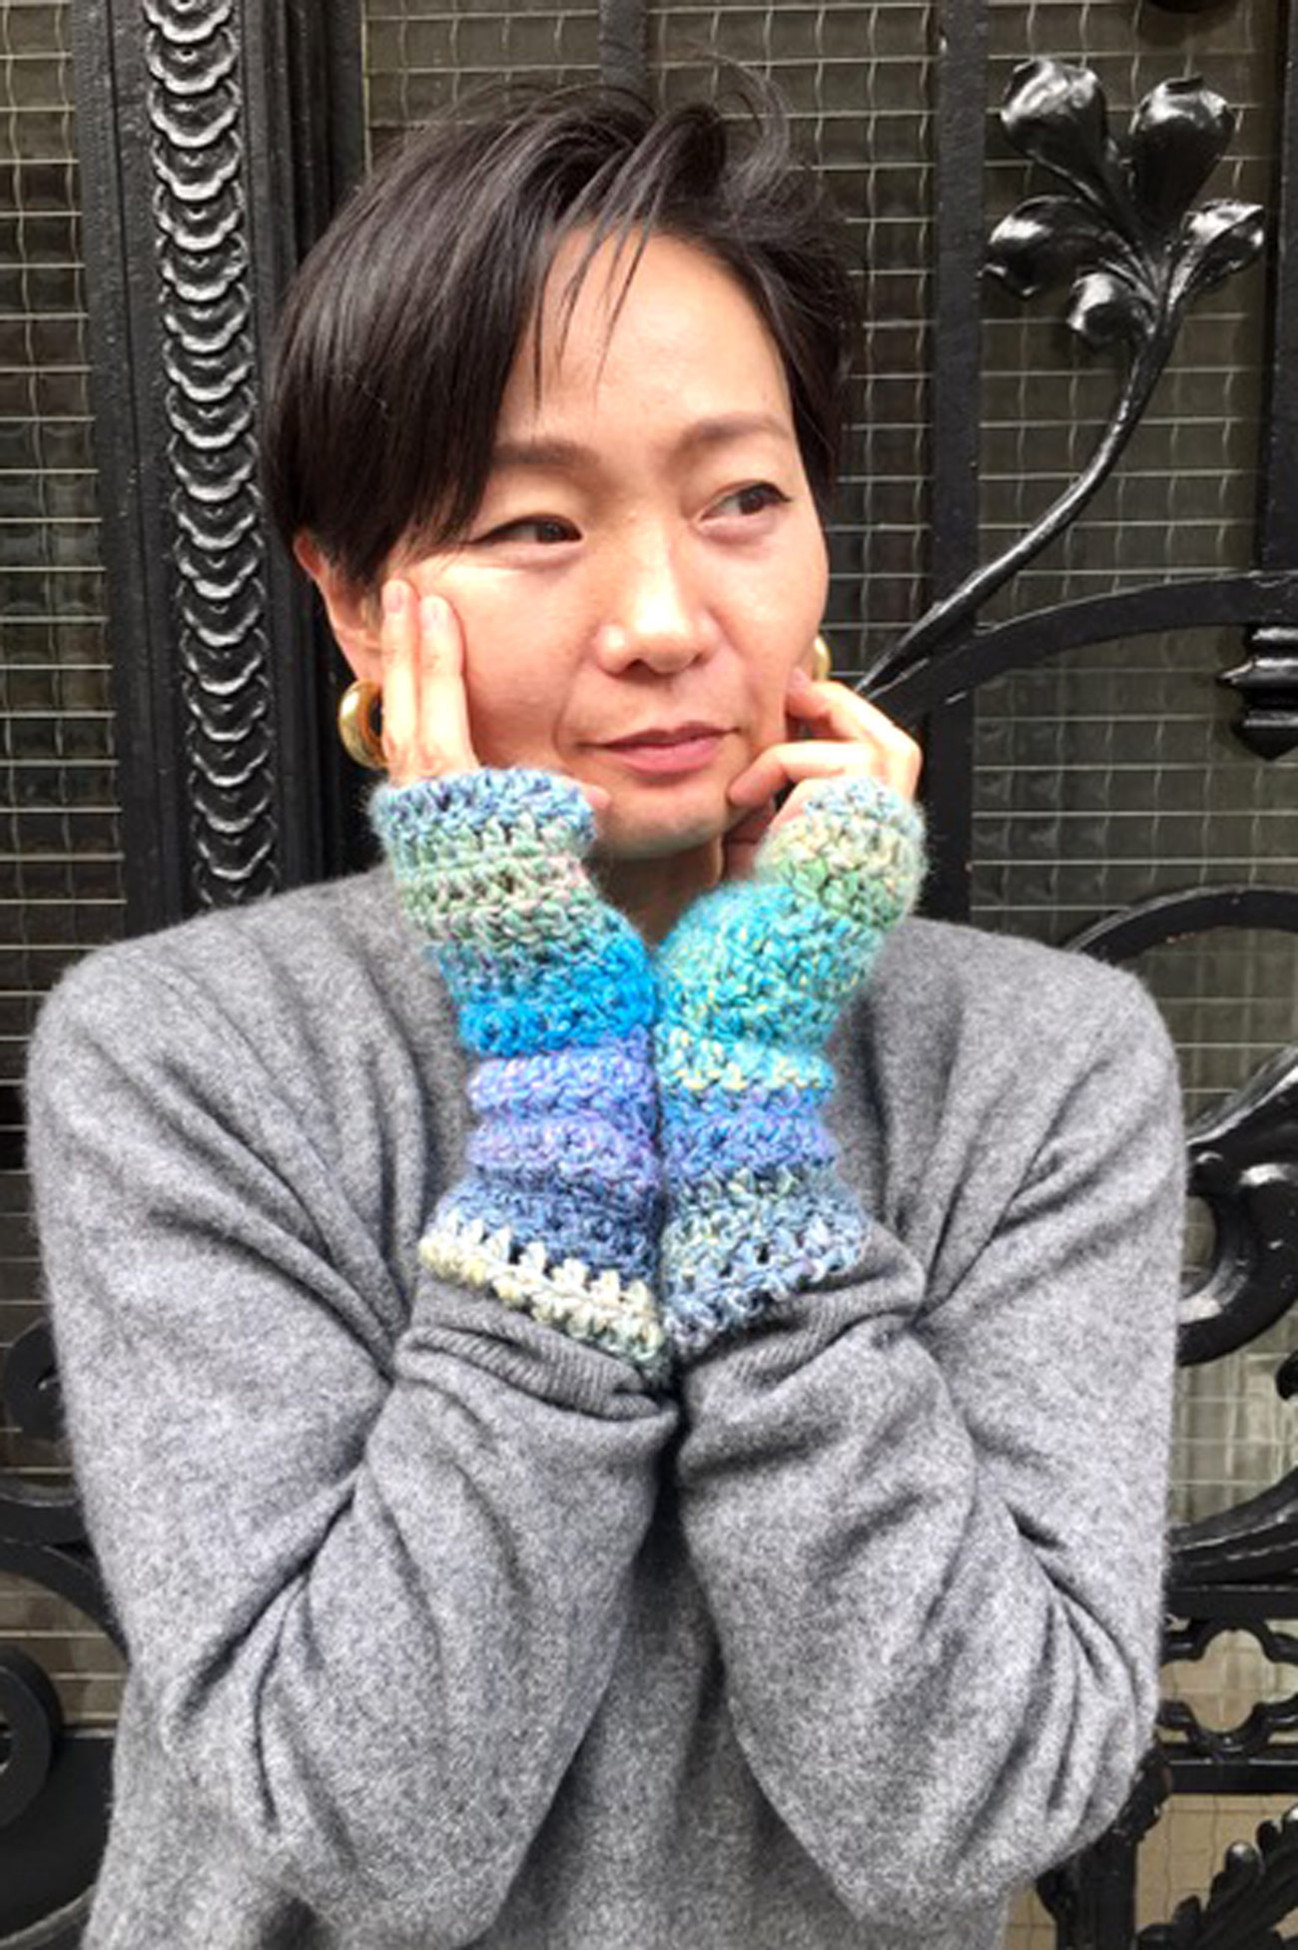 Atelier - Fingerless Gloves to Crochet